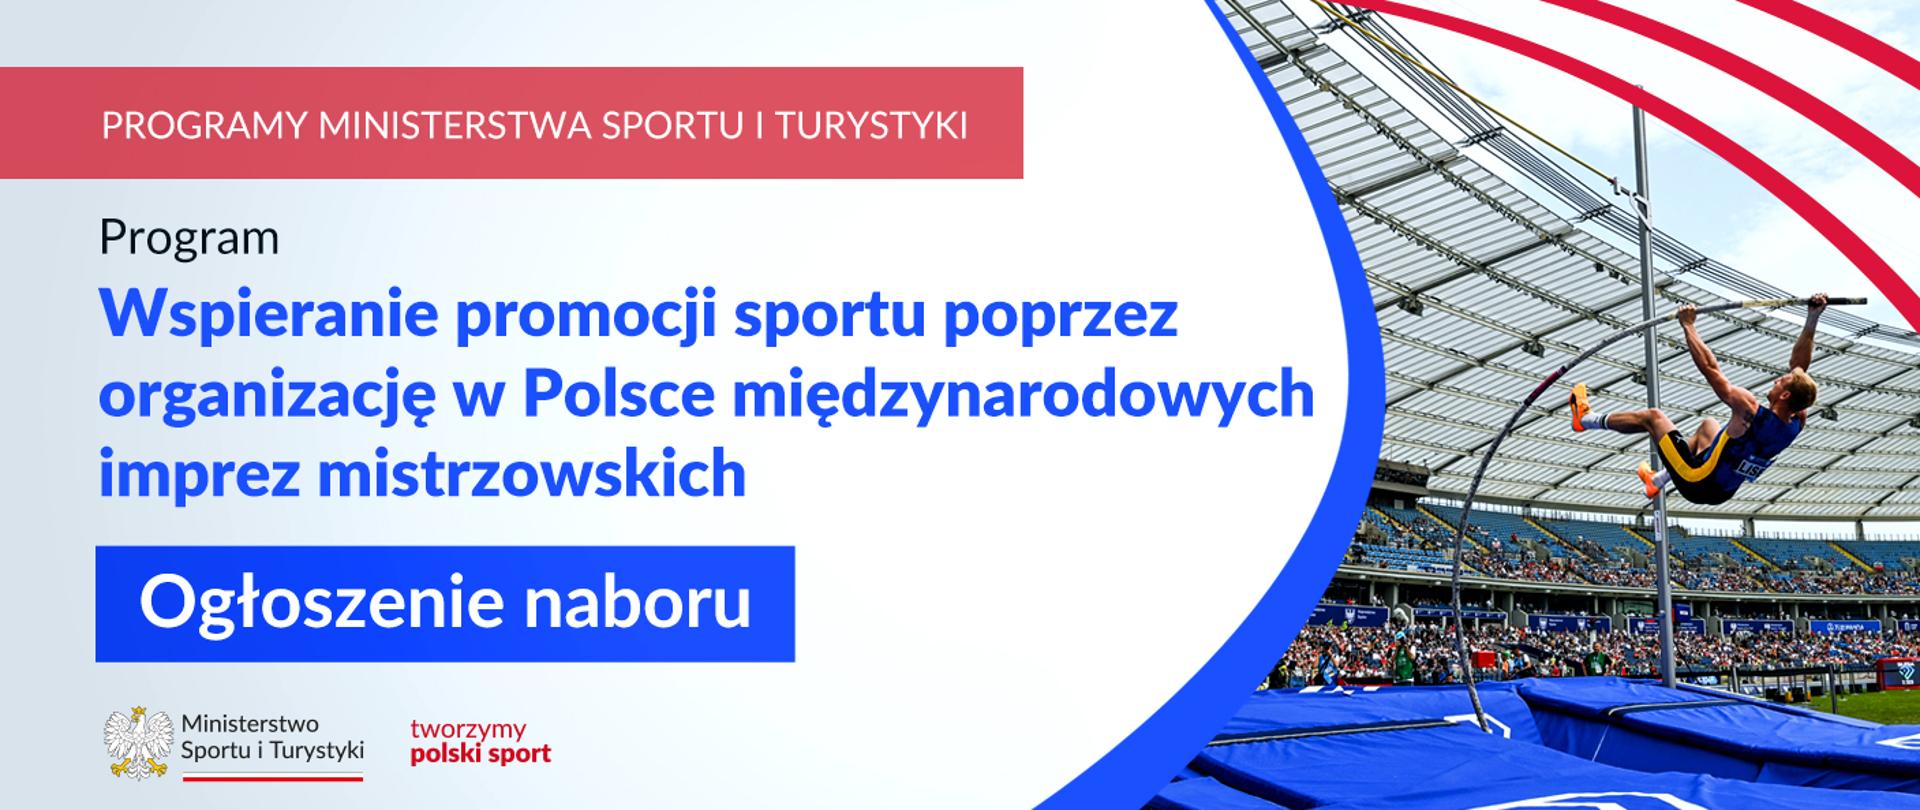 Ogłoszenie naboru wniosków w ramach wspierania promocji sportu poprzez organizację w Polsce międzynarodowych imprez mistrzowskich - plansza ze zdjęciem z zawodów skoku o tyczce na stadionie pełnym kibiców